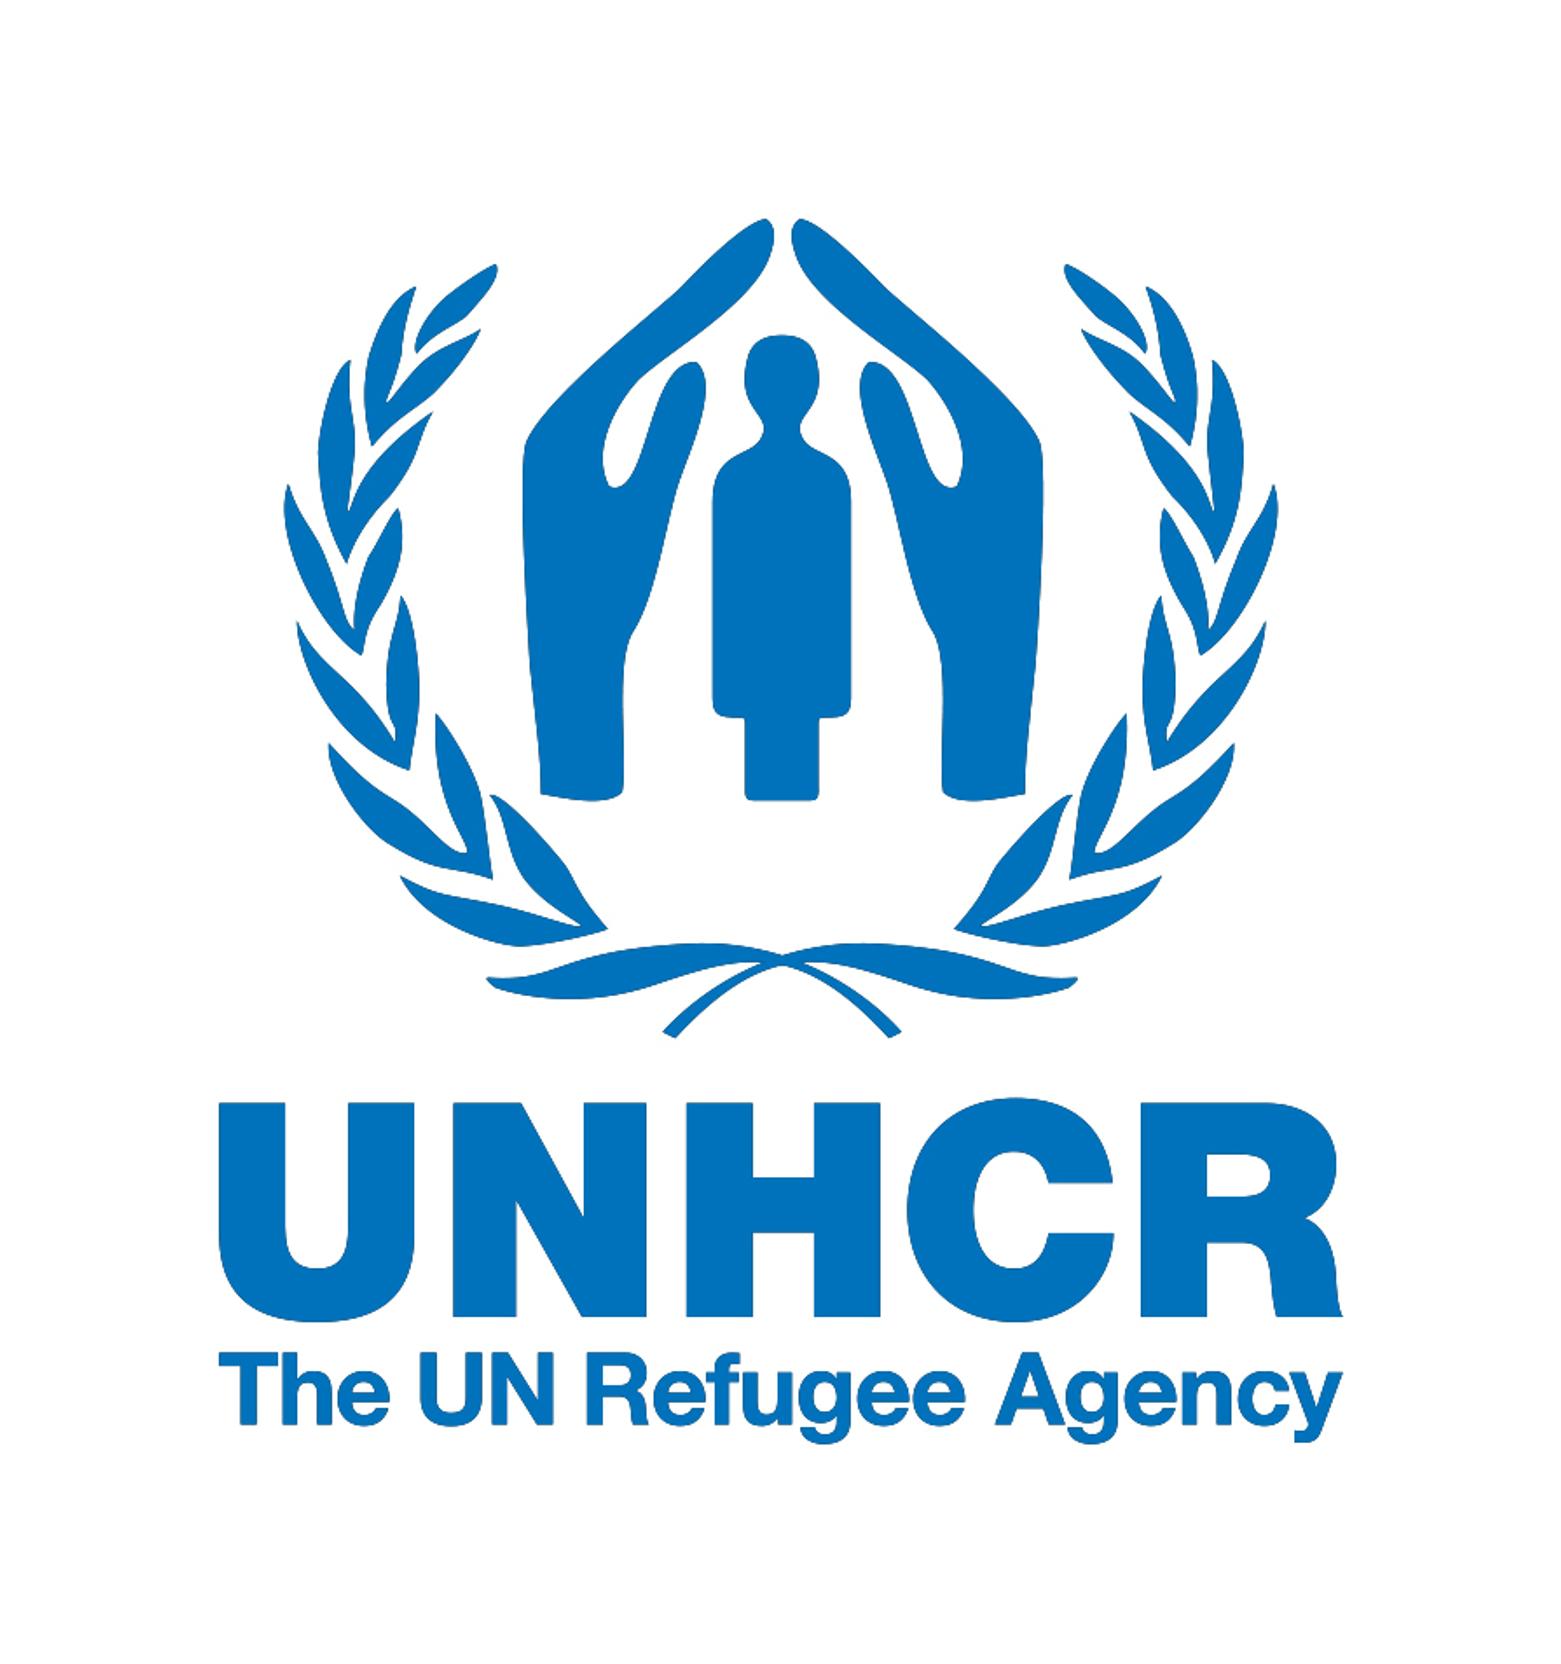 ACNUR, la Agencia de la ONU para los Refugiados